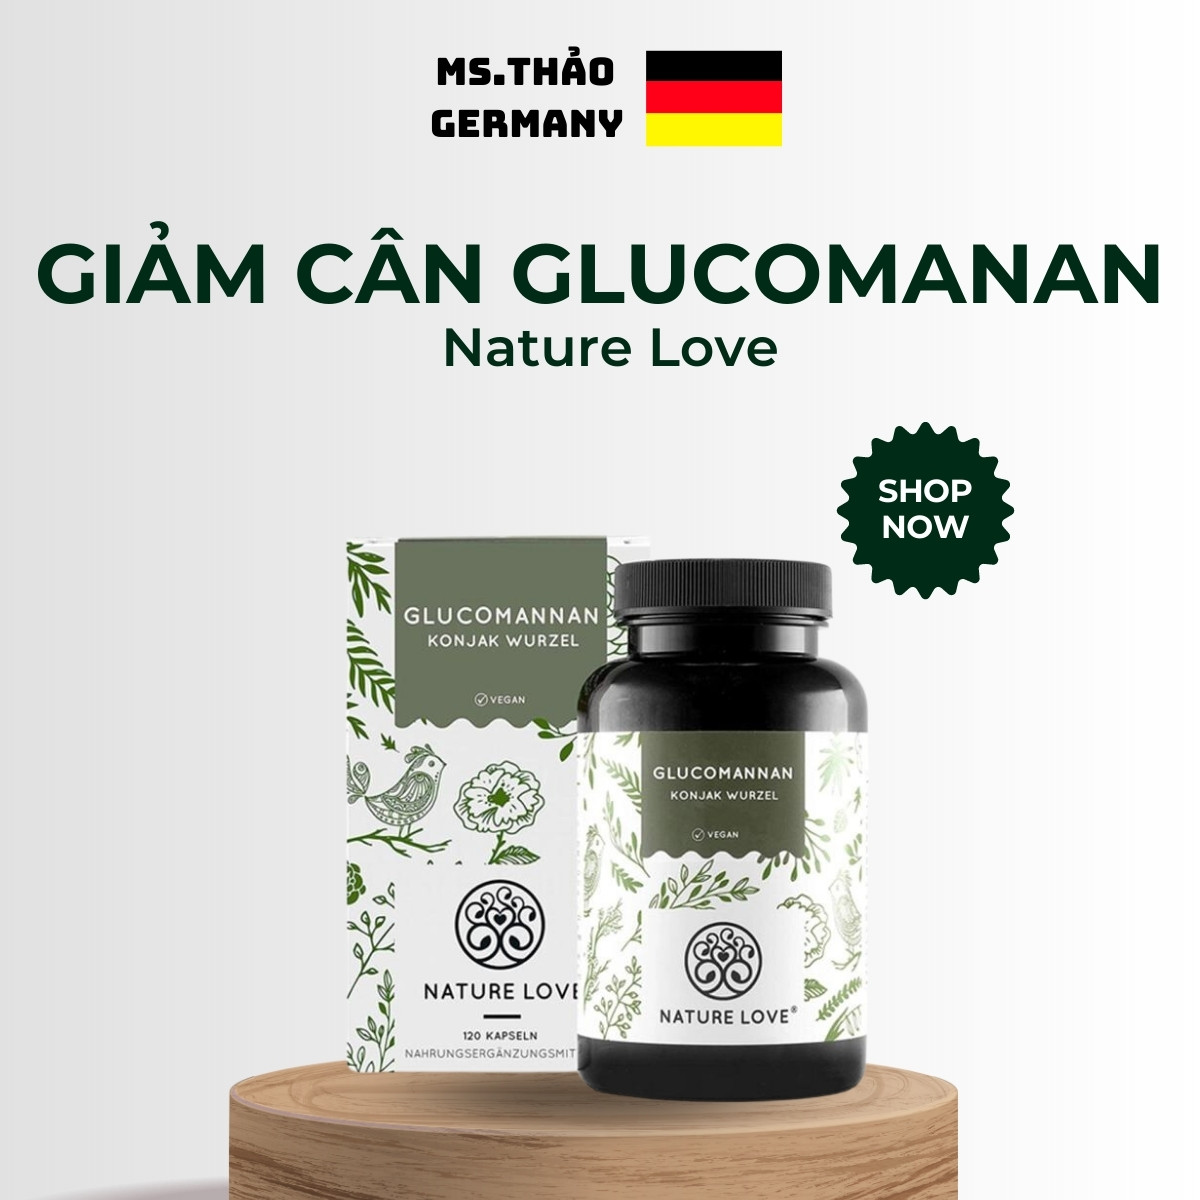 Giảm Cân Nature Love Glucomannan Nội Địa Đức